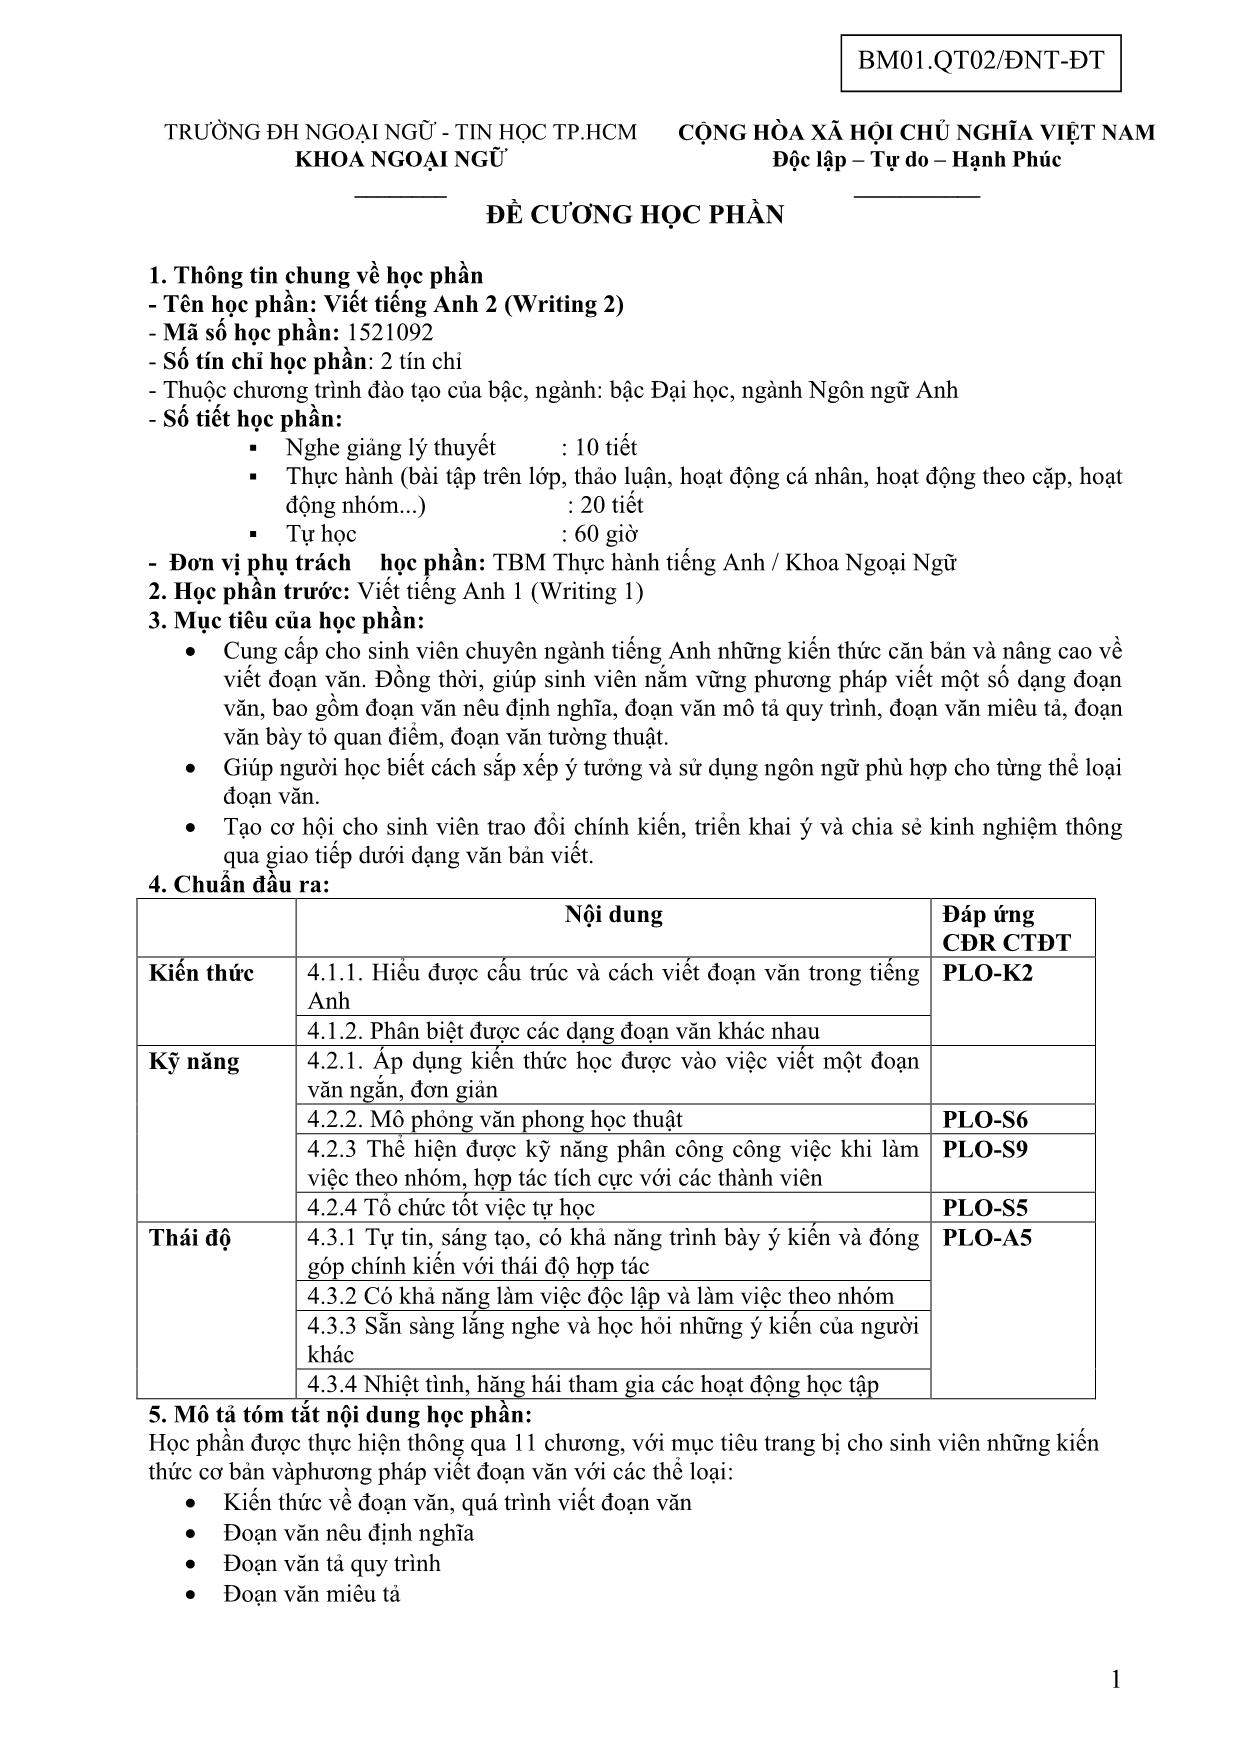 Đề cương học phần Viết tiếng Anh 2 (Writing 2) trang 1